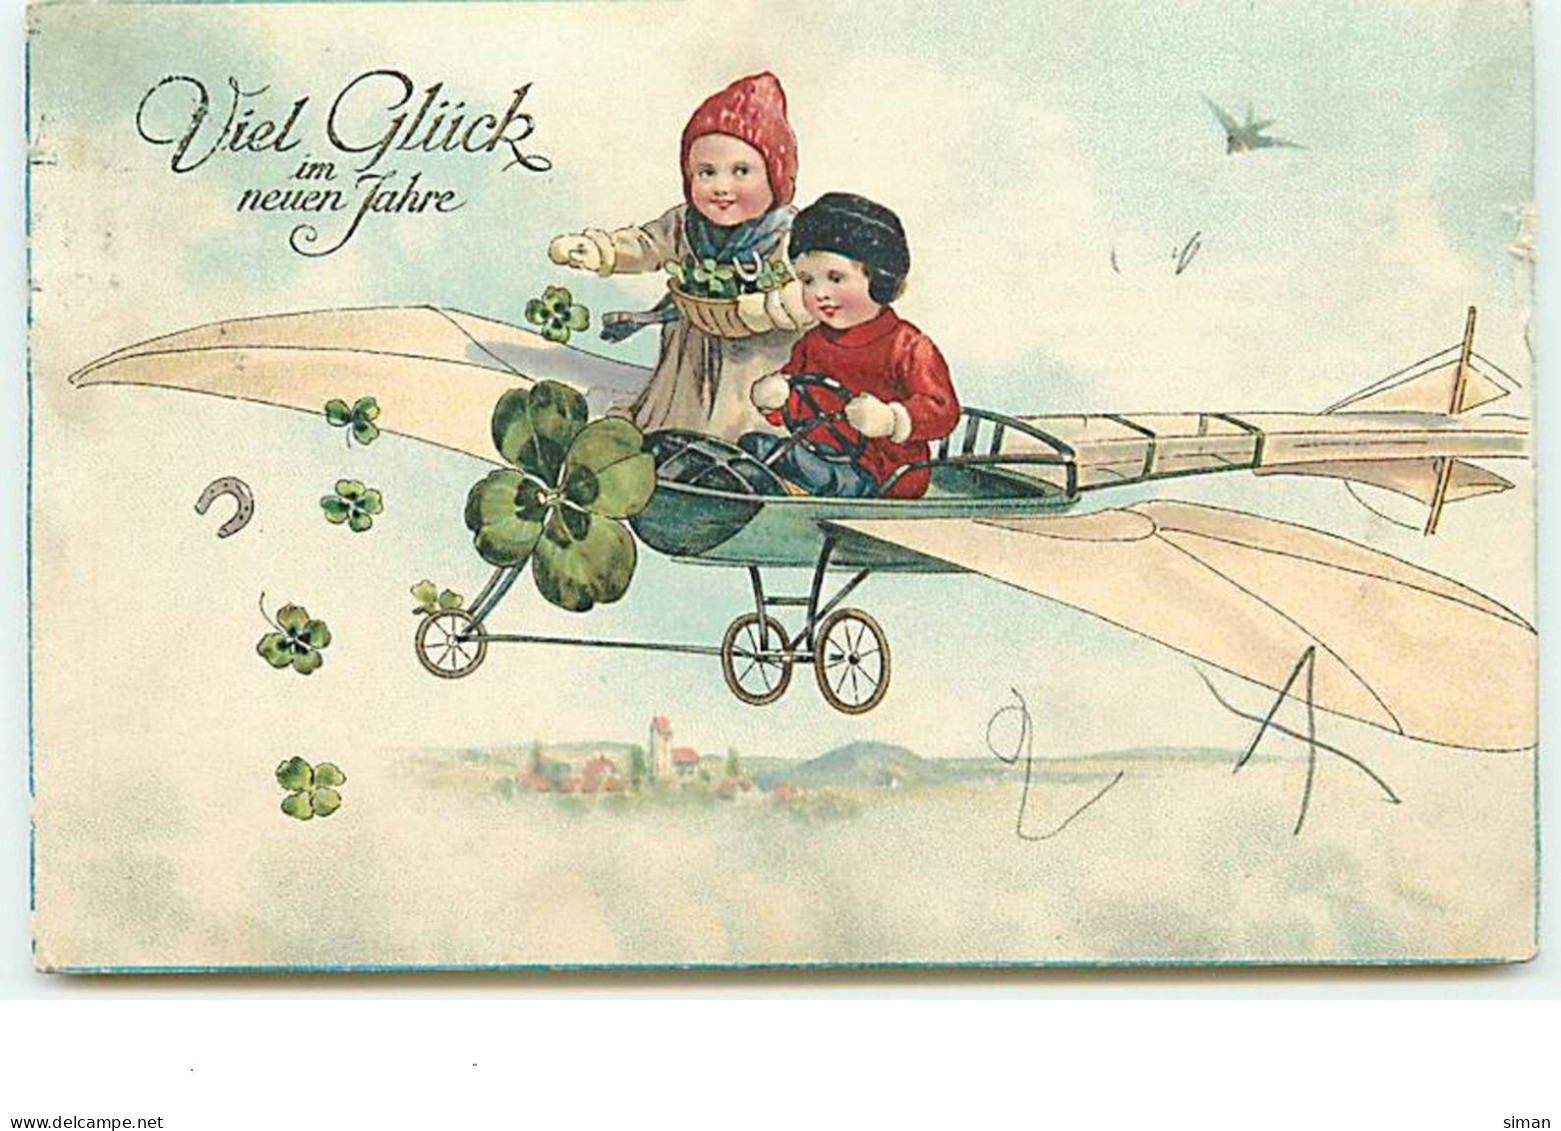 N°13888 - Viel Glück Im Nueun Jahre - Enfants Dans Un Avion, Lançant Des Portes-bonheur - Nouvel An